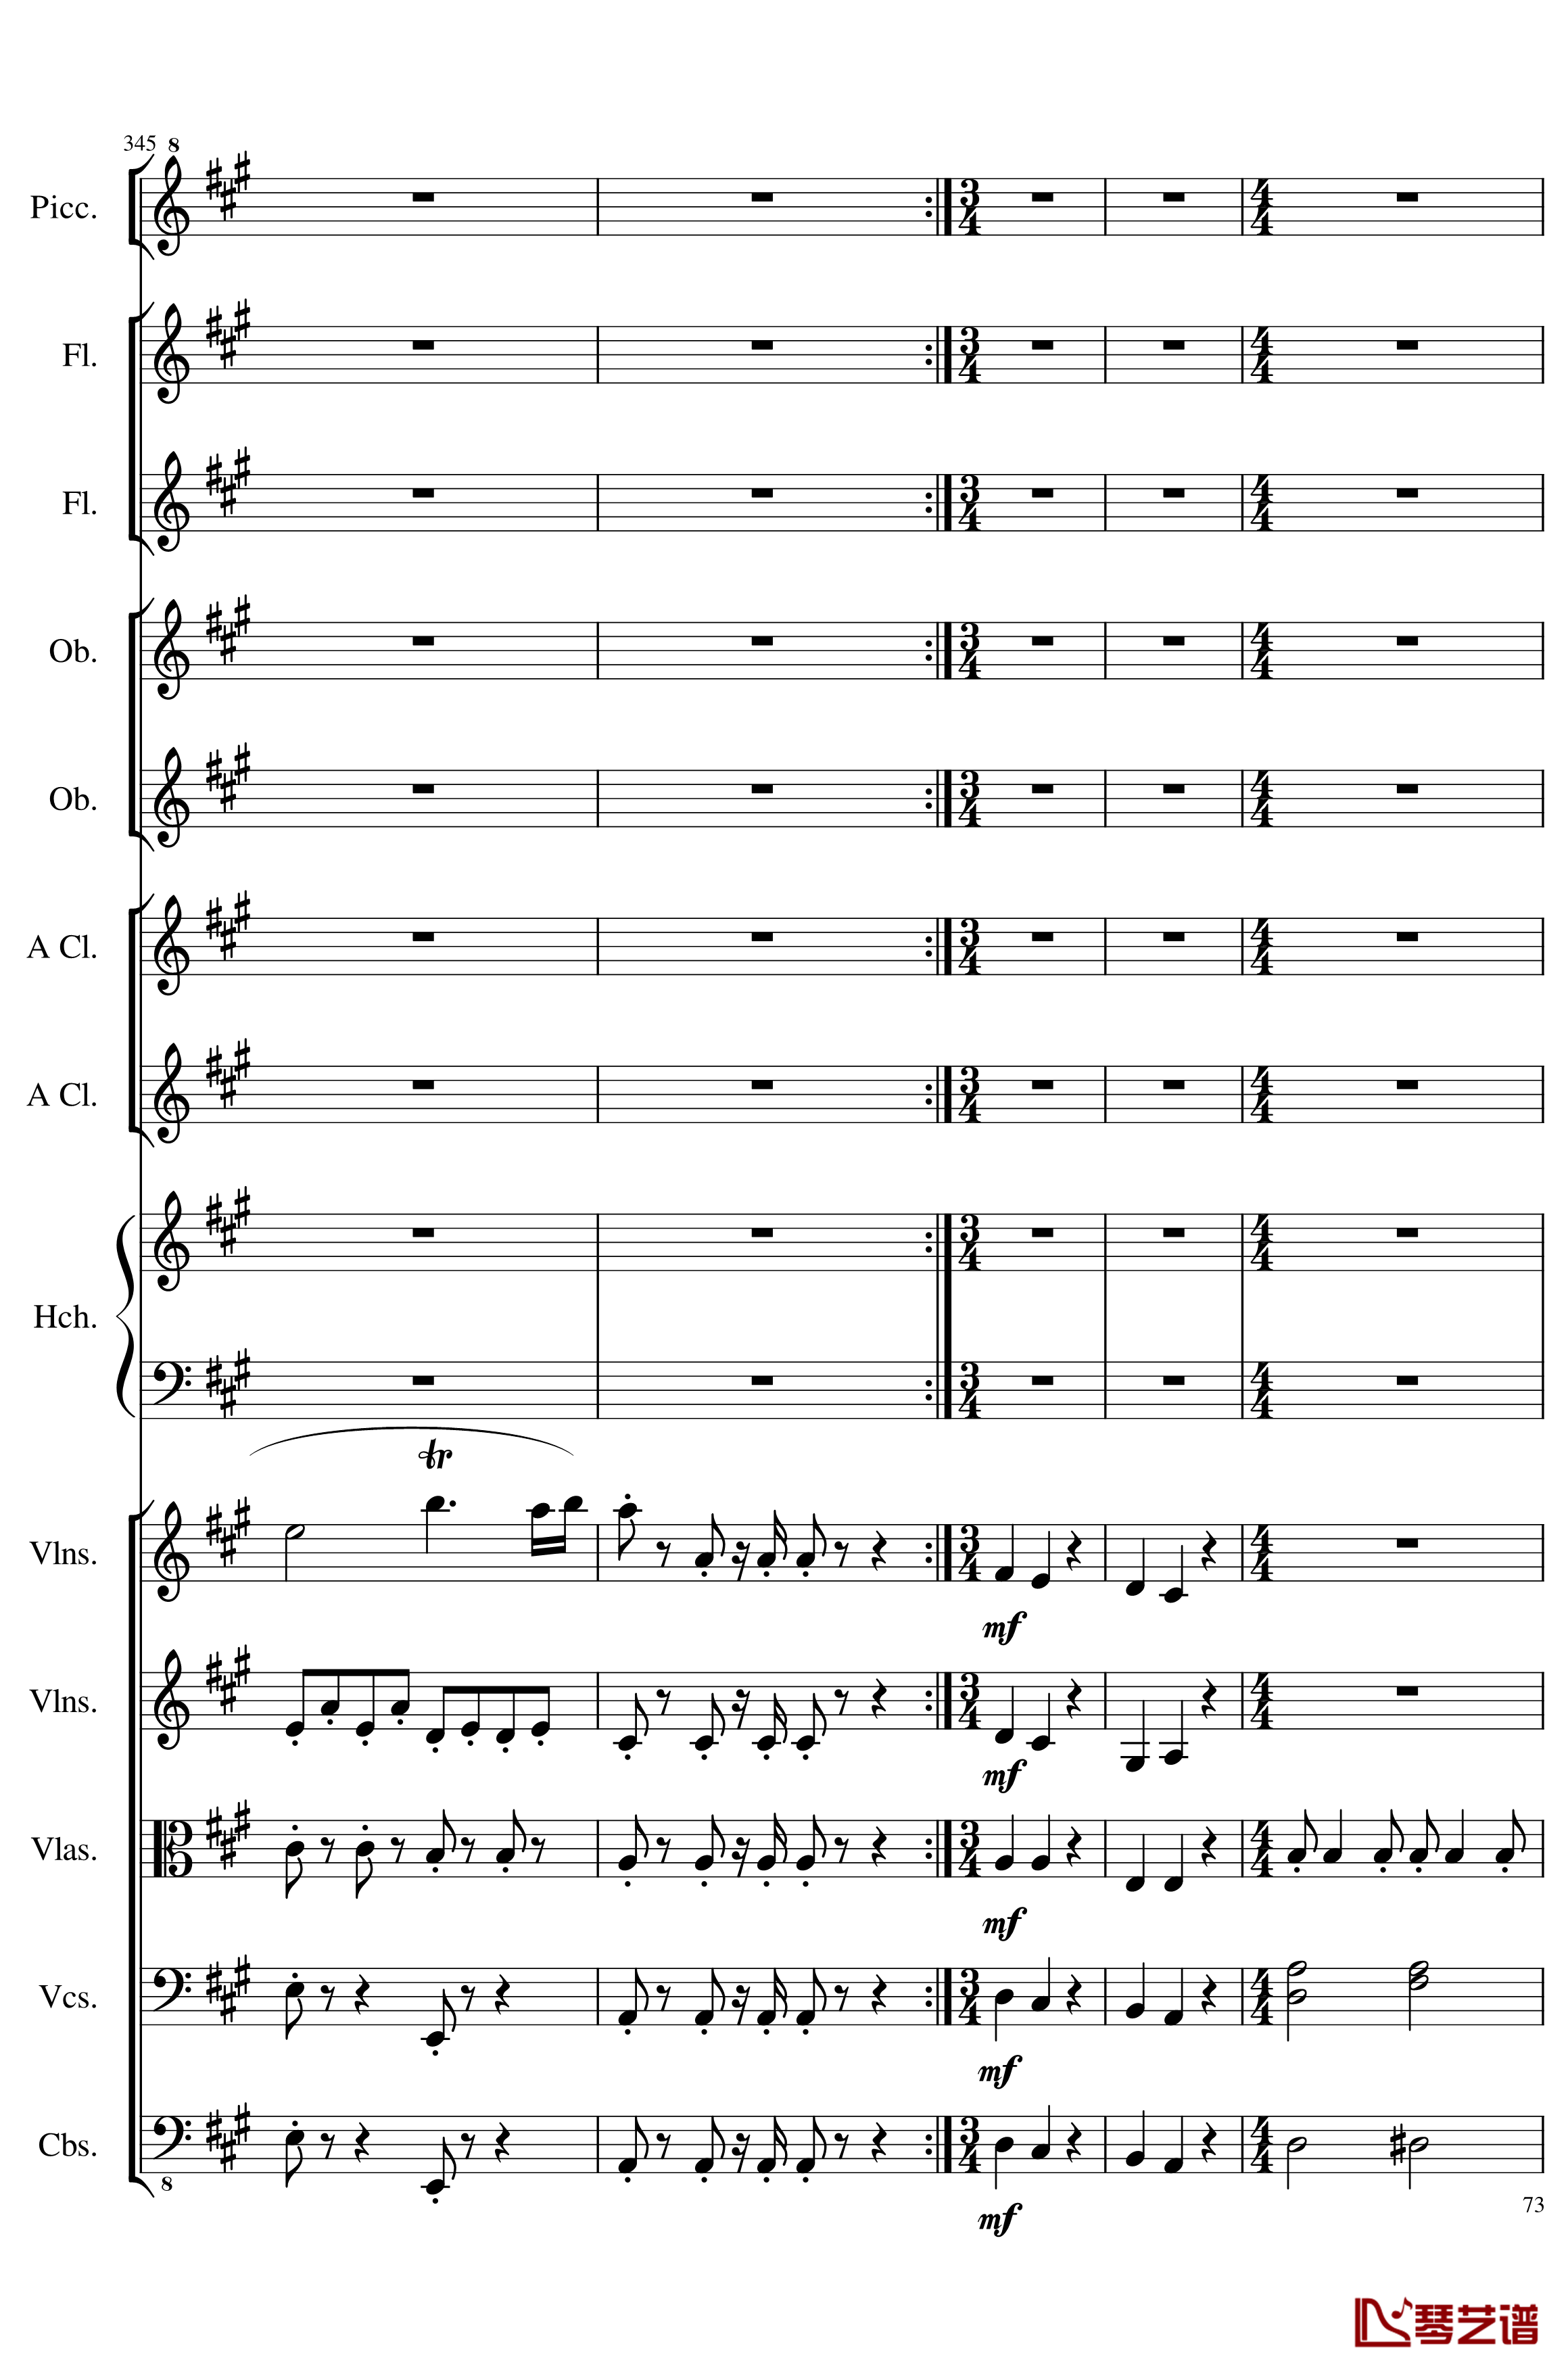 7 Contredanses No.1-7, Op.124钢琴谱-7首乡村舞曲，第一至第七，作品124-一个球73